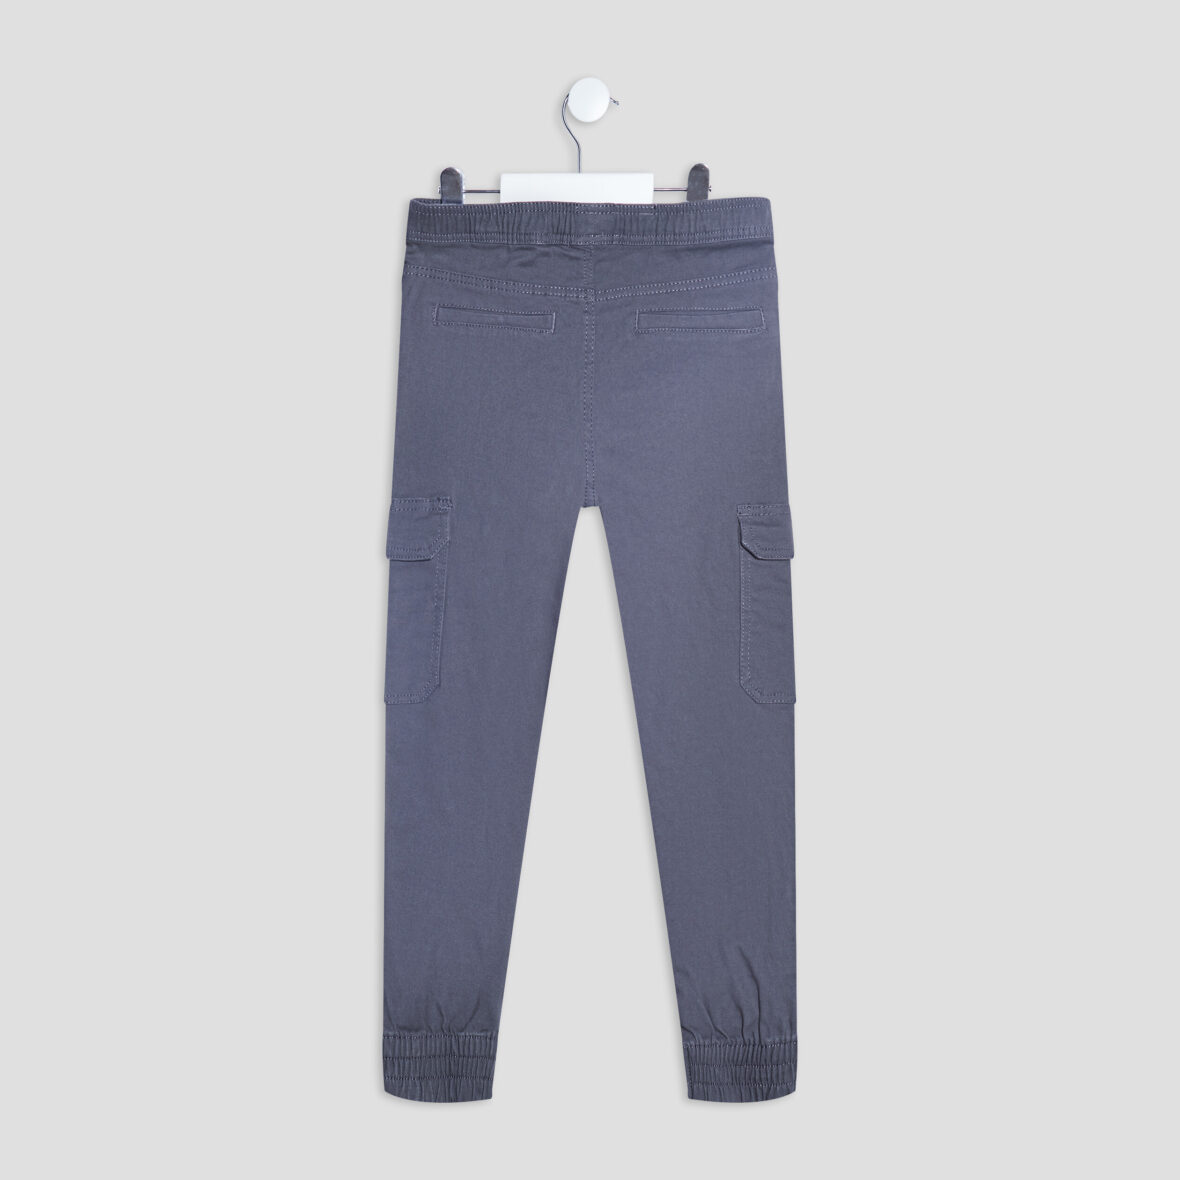 pantalon-battle-taille-elastiquee-gris-fonce-garcon-a-36165600616541045